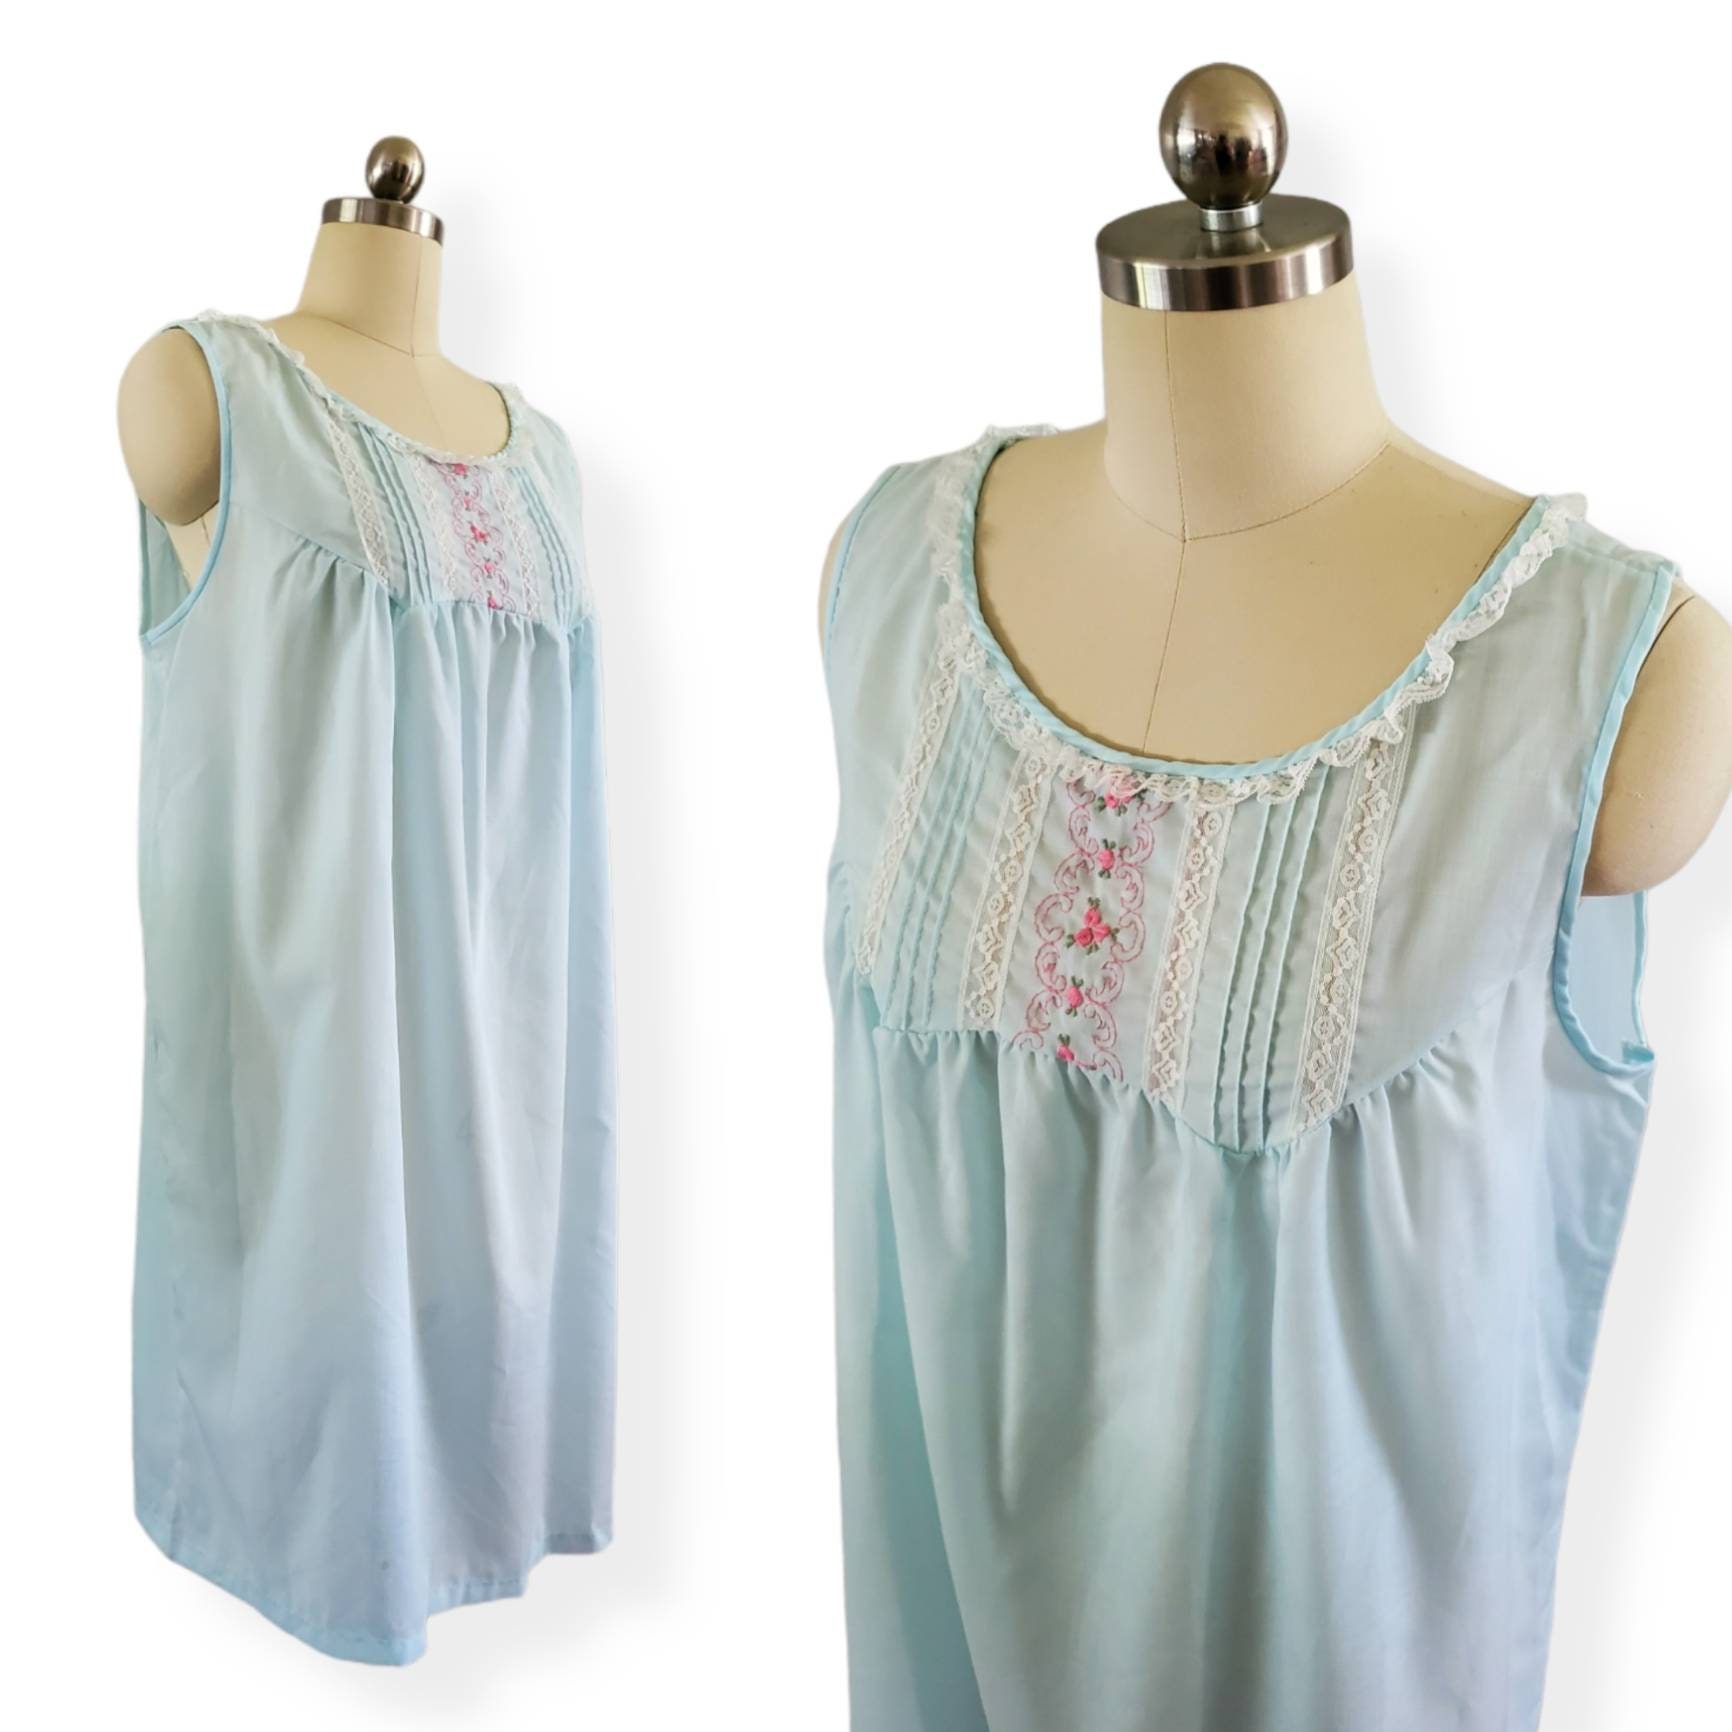 1970S Cotton Blend Nightgown By Heiress 70S Sleepwear 70's Women's Vintage Size Medium